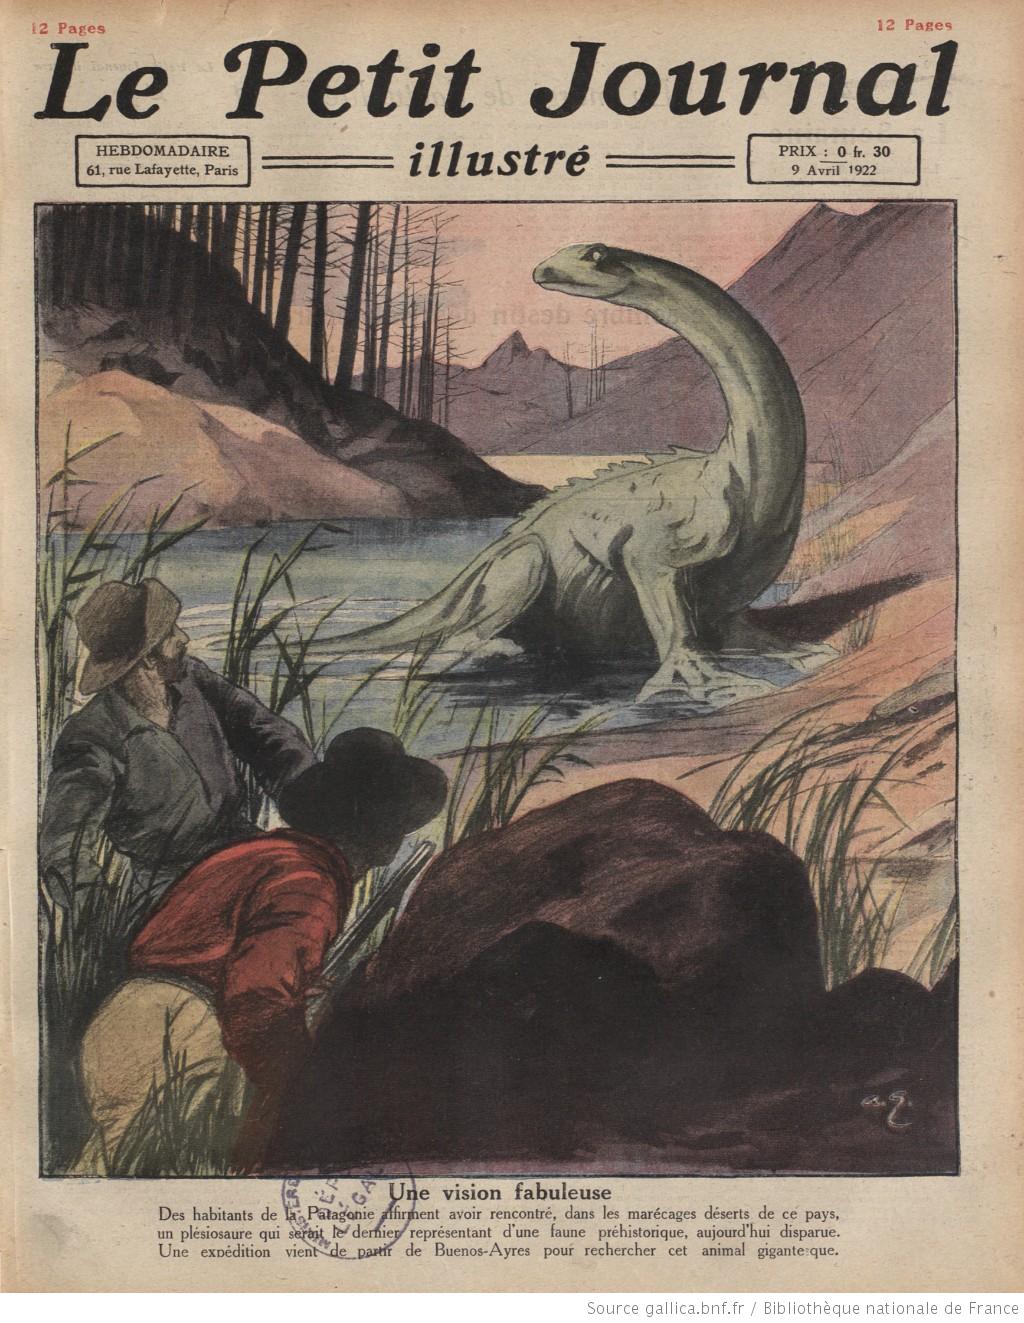 Couverture du Petit Journal Illustré le dimanche 9 avril, relatant la découverte d'un            "plésiosaure" dans des marécages de Patagonie